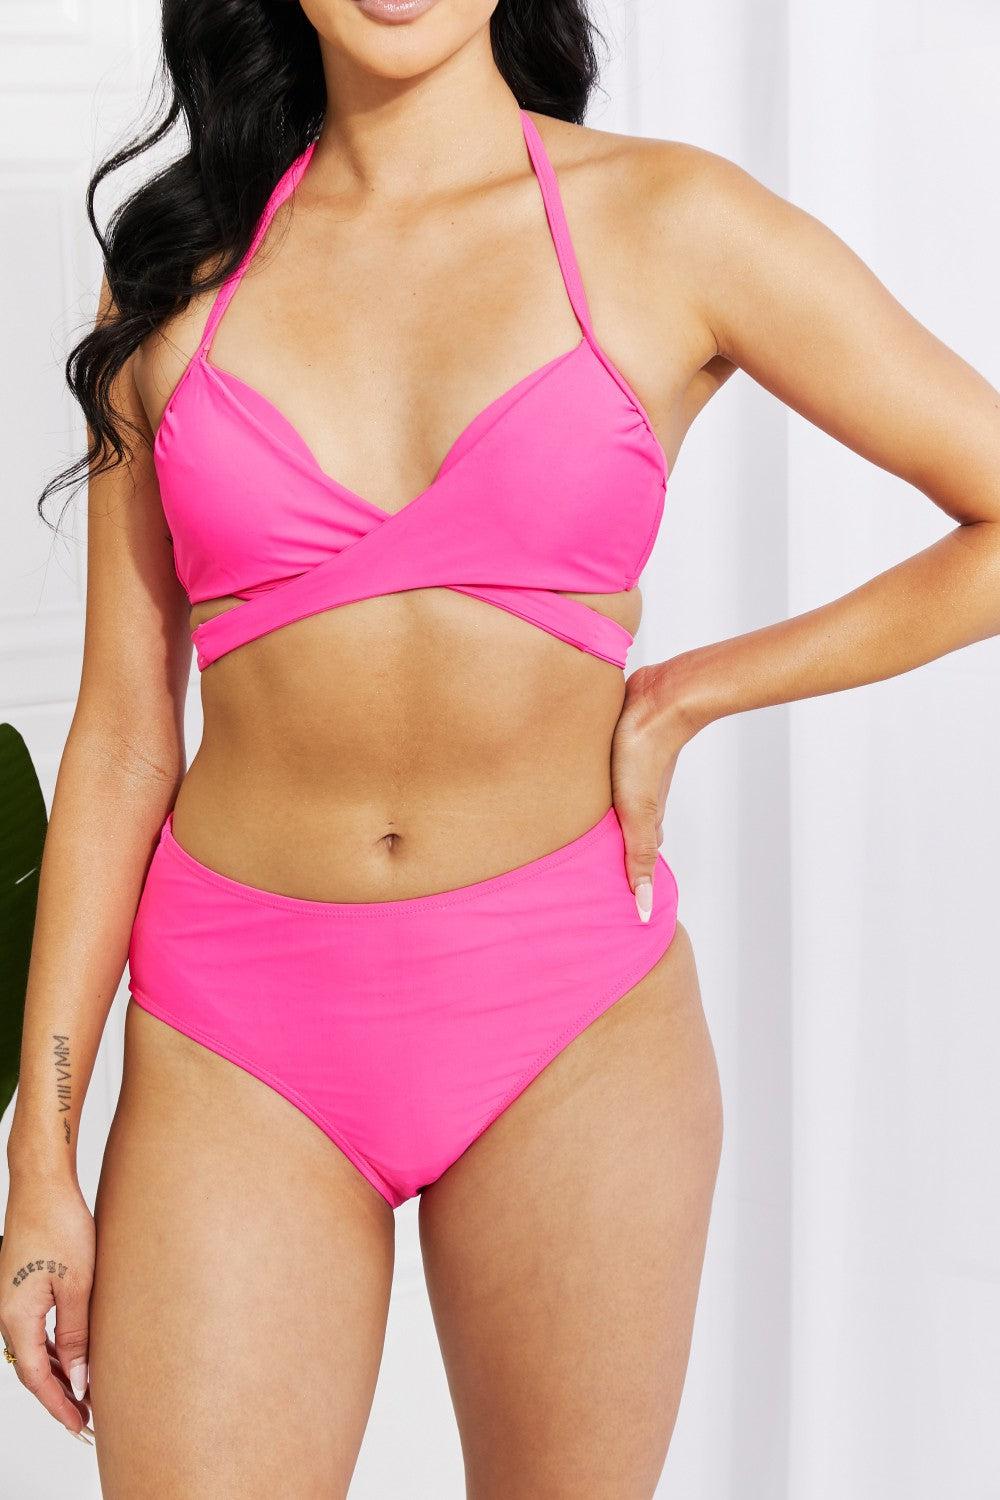 Marina West Swim Summer Splash Halter Bikini Set in Pink BLUE ZONE PLANET